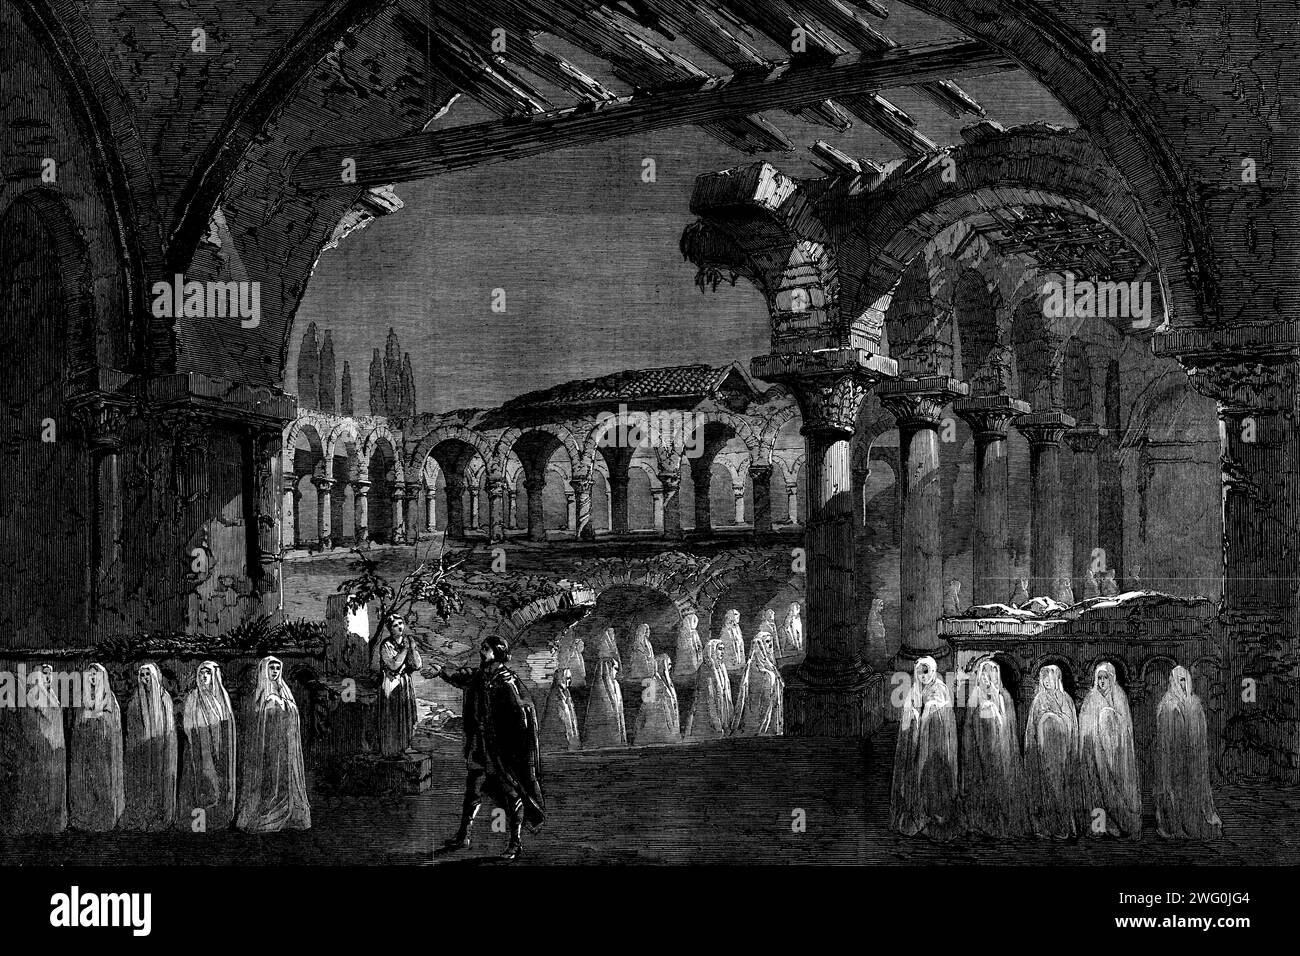 La scena delle suore nell'atto III. Di "Robert le Diable" al Her Majesty's Theatre, 1862. Produzione teatrale di Londra. "...la scena nel terzo atto di questo celebrato opera...in che le suore sepolte nei chiostri in rovina della vecchia abbazia, sotto l'incantesimo del fienile Bertram, "rivisitano gli scorci della luna", e vieni a scivolare da ogni lato, una banda orribile vestita con gli elementi della tomba. Questa scena è rappresentata dal pittore, William Callcott, con grande potere pittorico, e il suo effetto è nel più alto grado non terrestre e spaventoso”. Da "Illustrated Londo Foto Stock